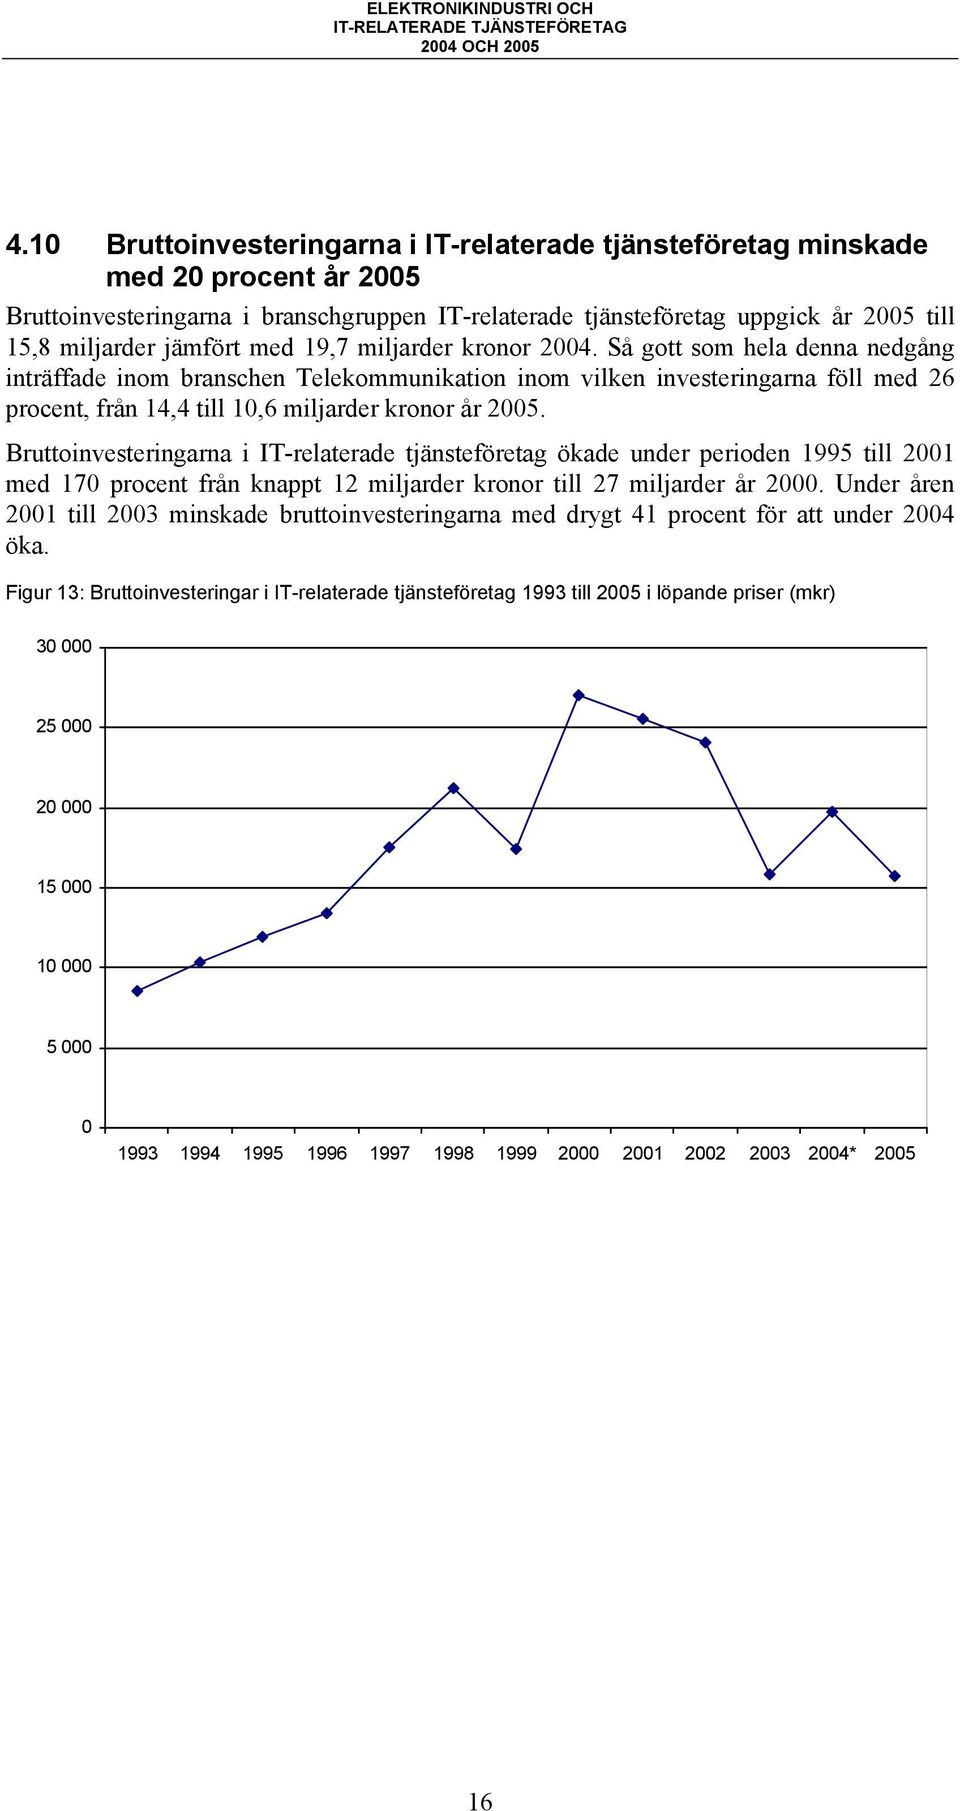 Så gott som hela denna nedgång inträffade inom branschen Telekommunikation inom vilken investeringarna föll med 26 procent, från 14,4 till 10,6 miljarder kronor år 2005.